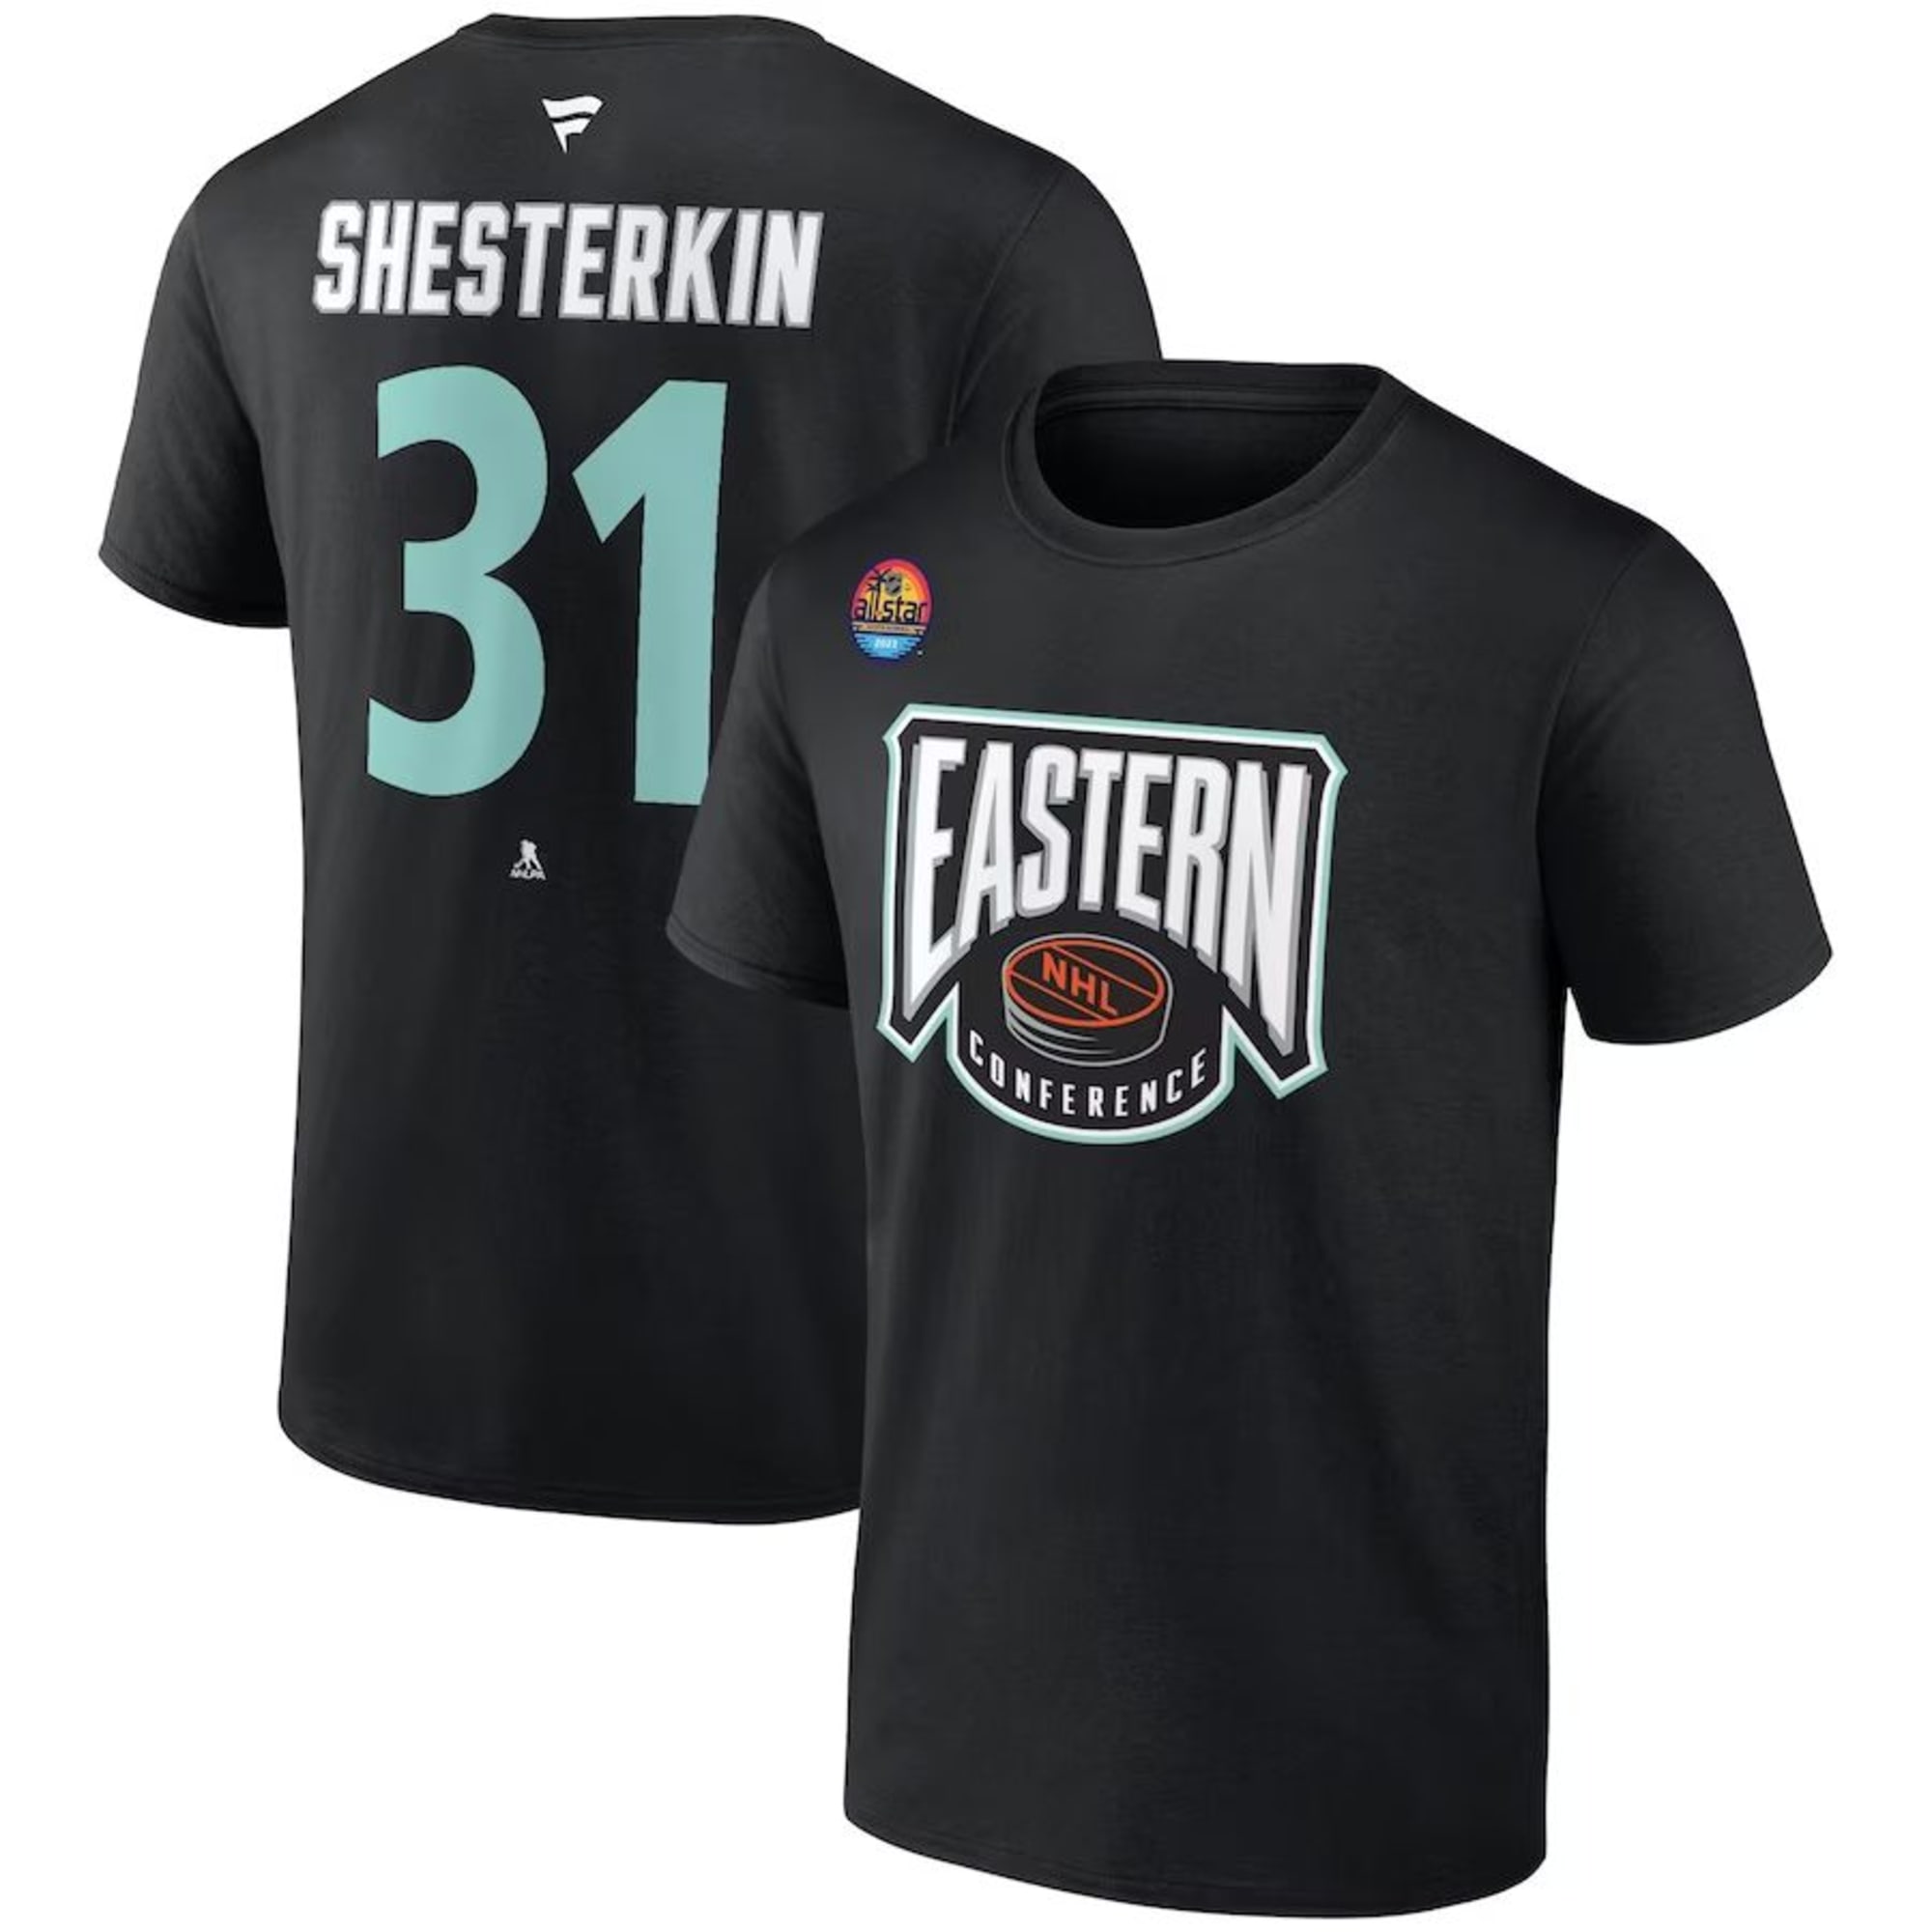 Igor Shesterkin New York Rangers Jerseys, Igor Shesterkin Rangers T-Shirts,  Gear